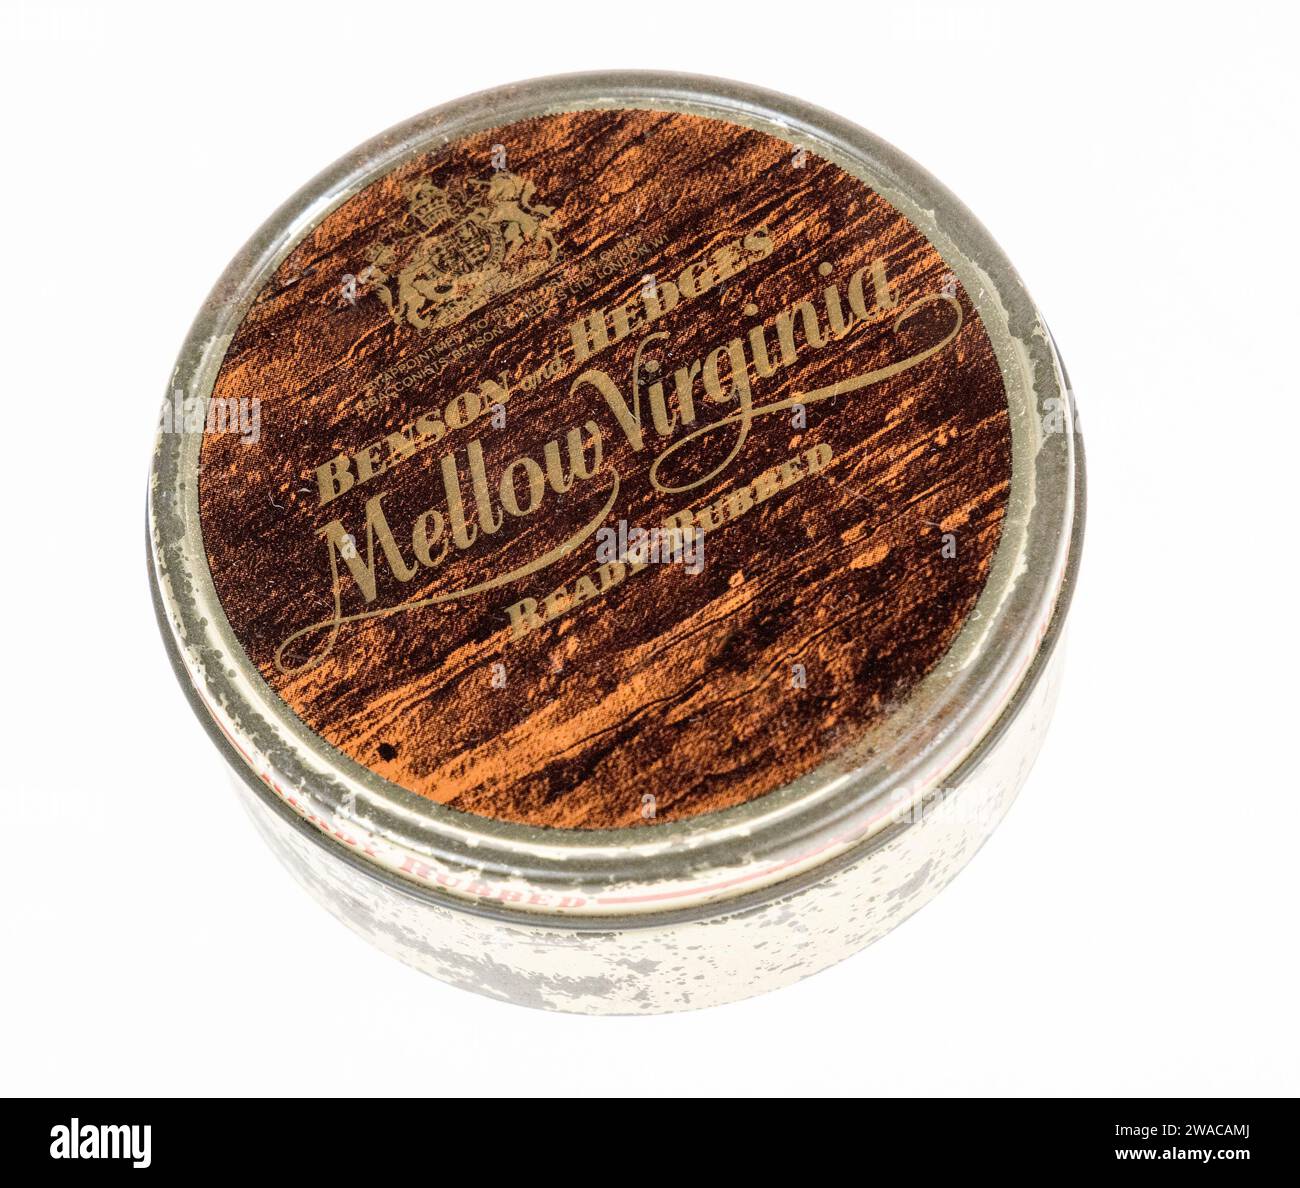 Stagno Virginia Mellow di Benson and Hedges tabacco gommato pronto degli anni '1970, Regno Unito Foto Stock